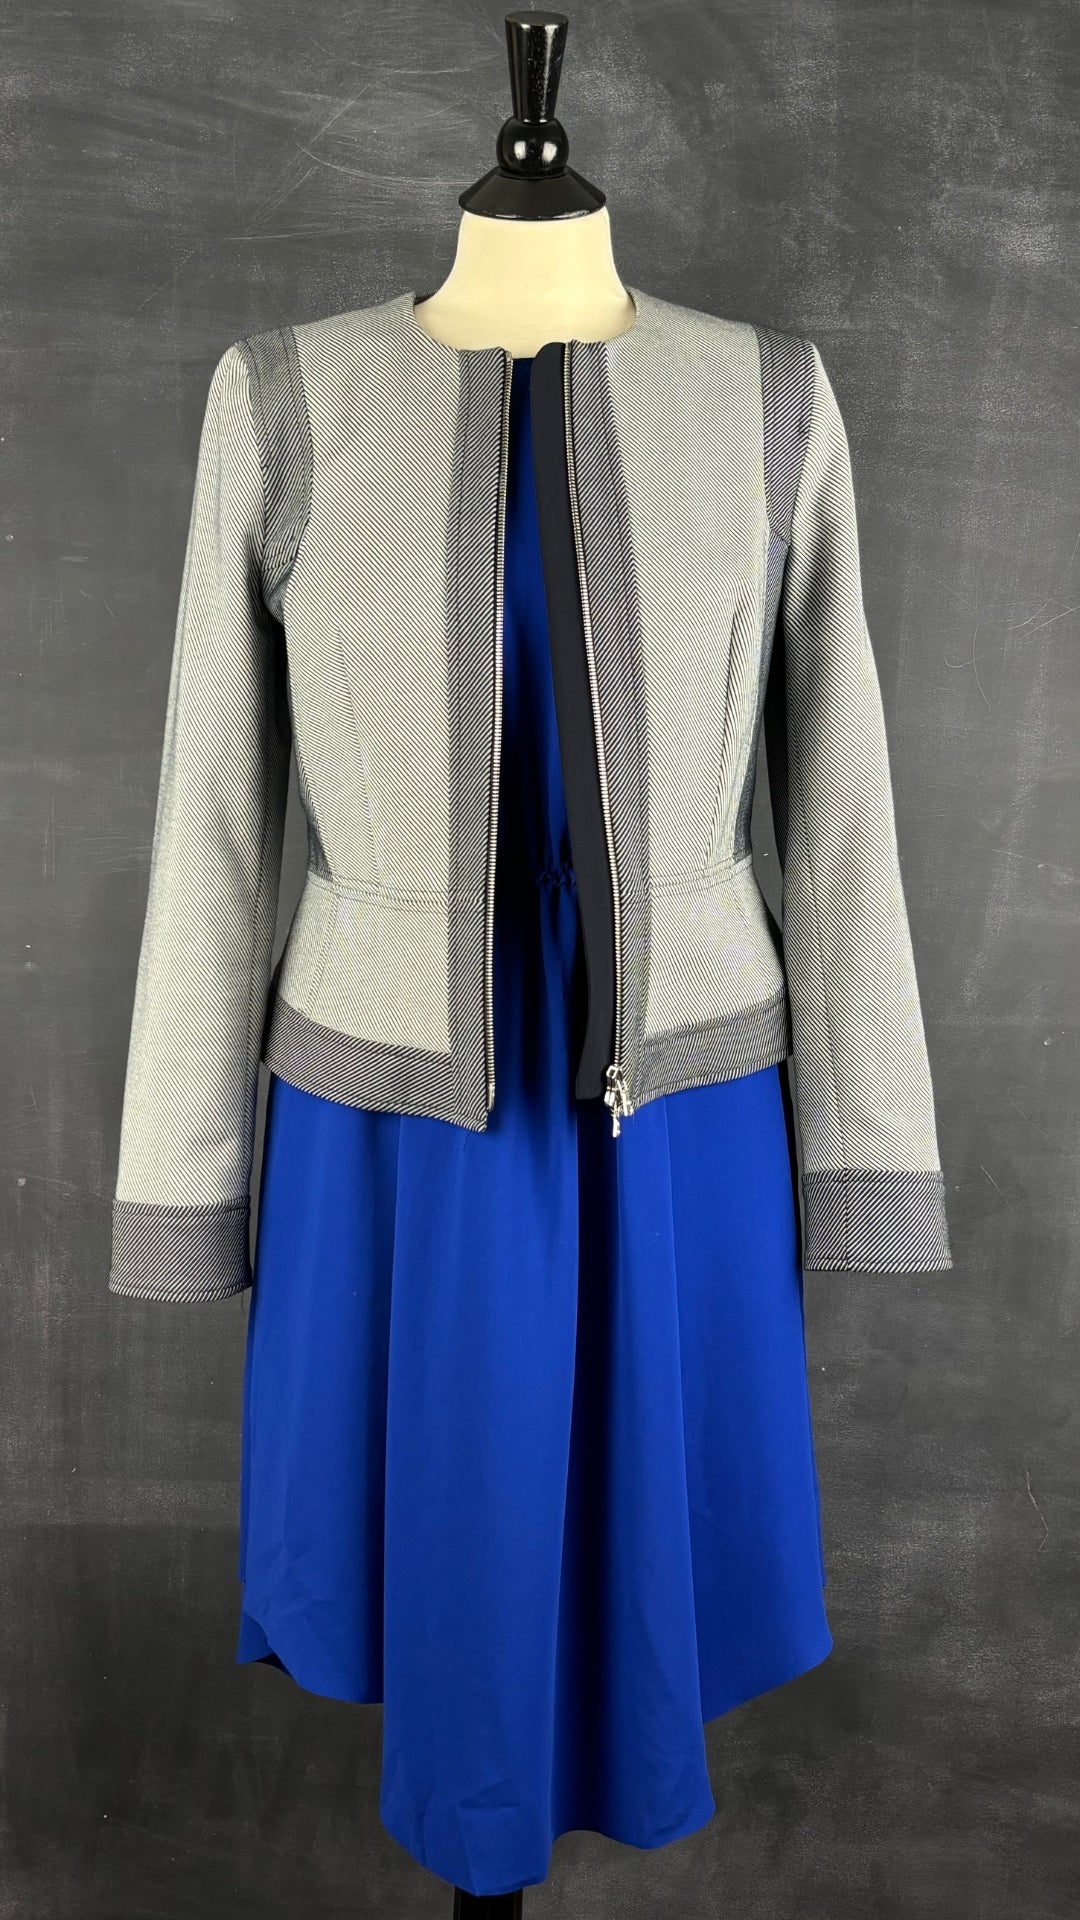 Robe fluide bleu cobalt Wilfred, taille medium. Vue de l'agencement avec la veste à rayures Judith & Charles.